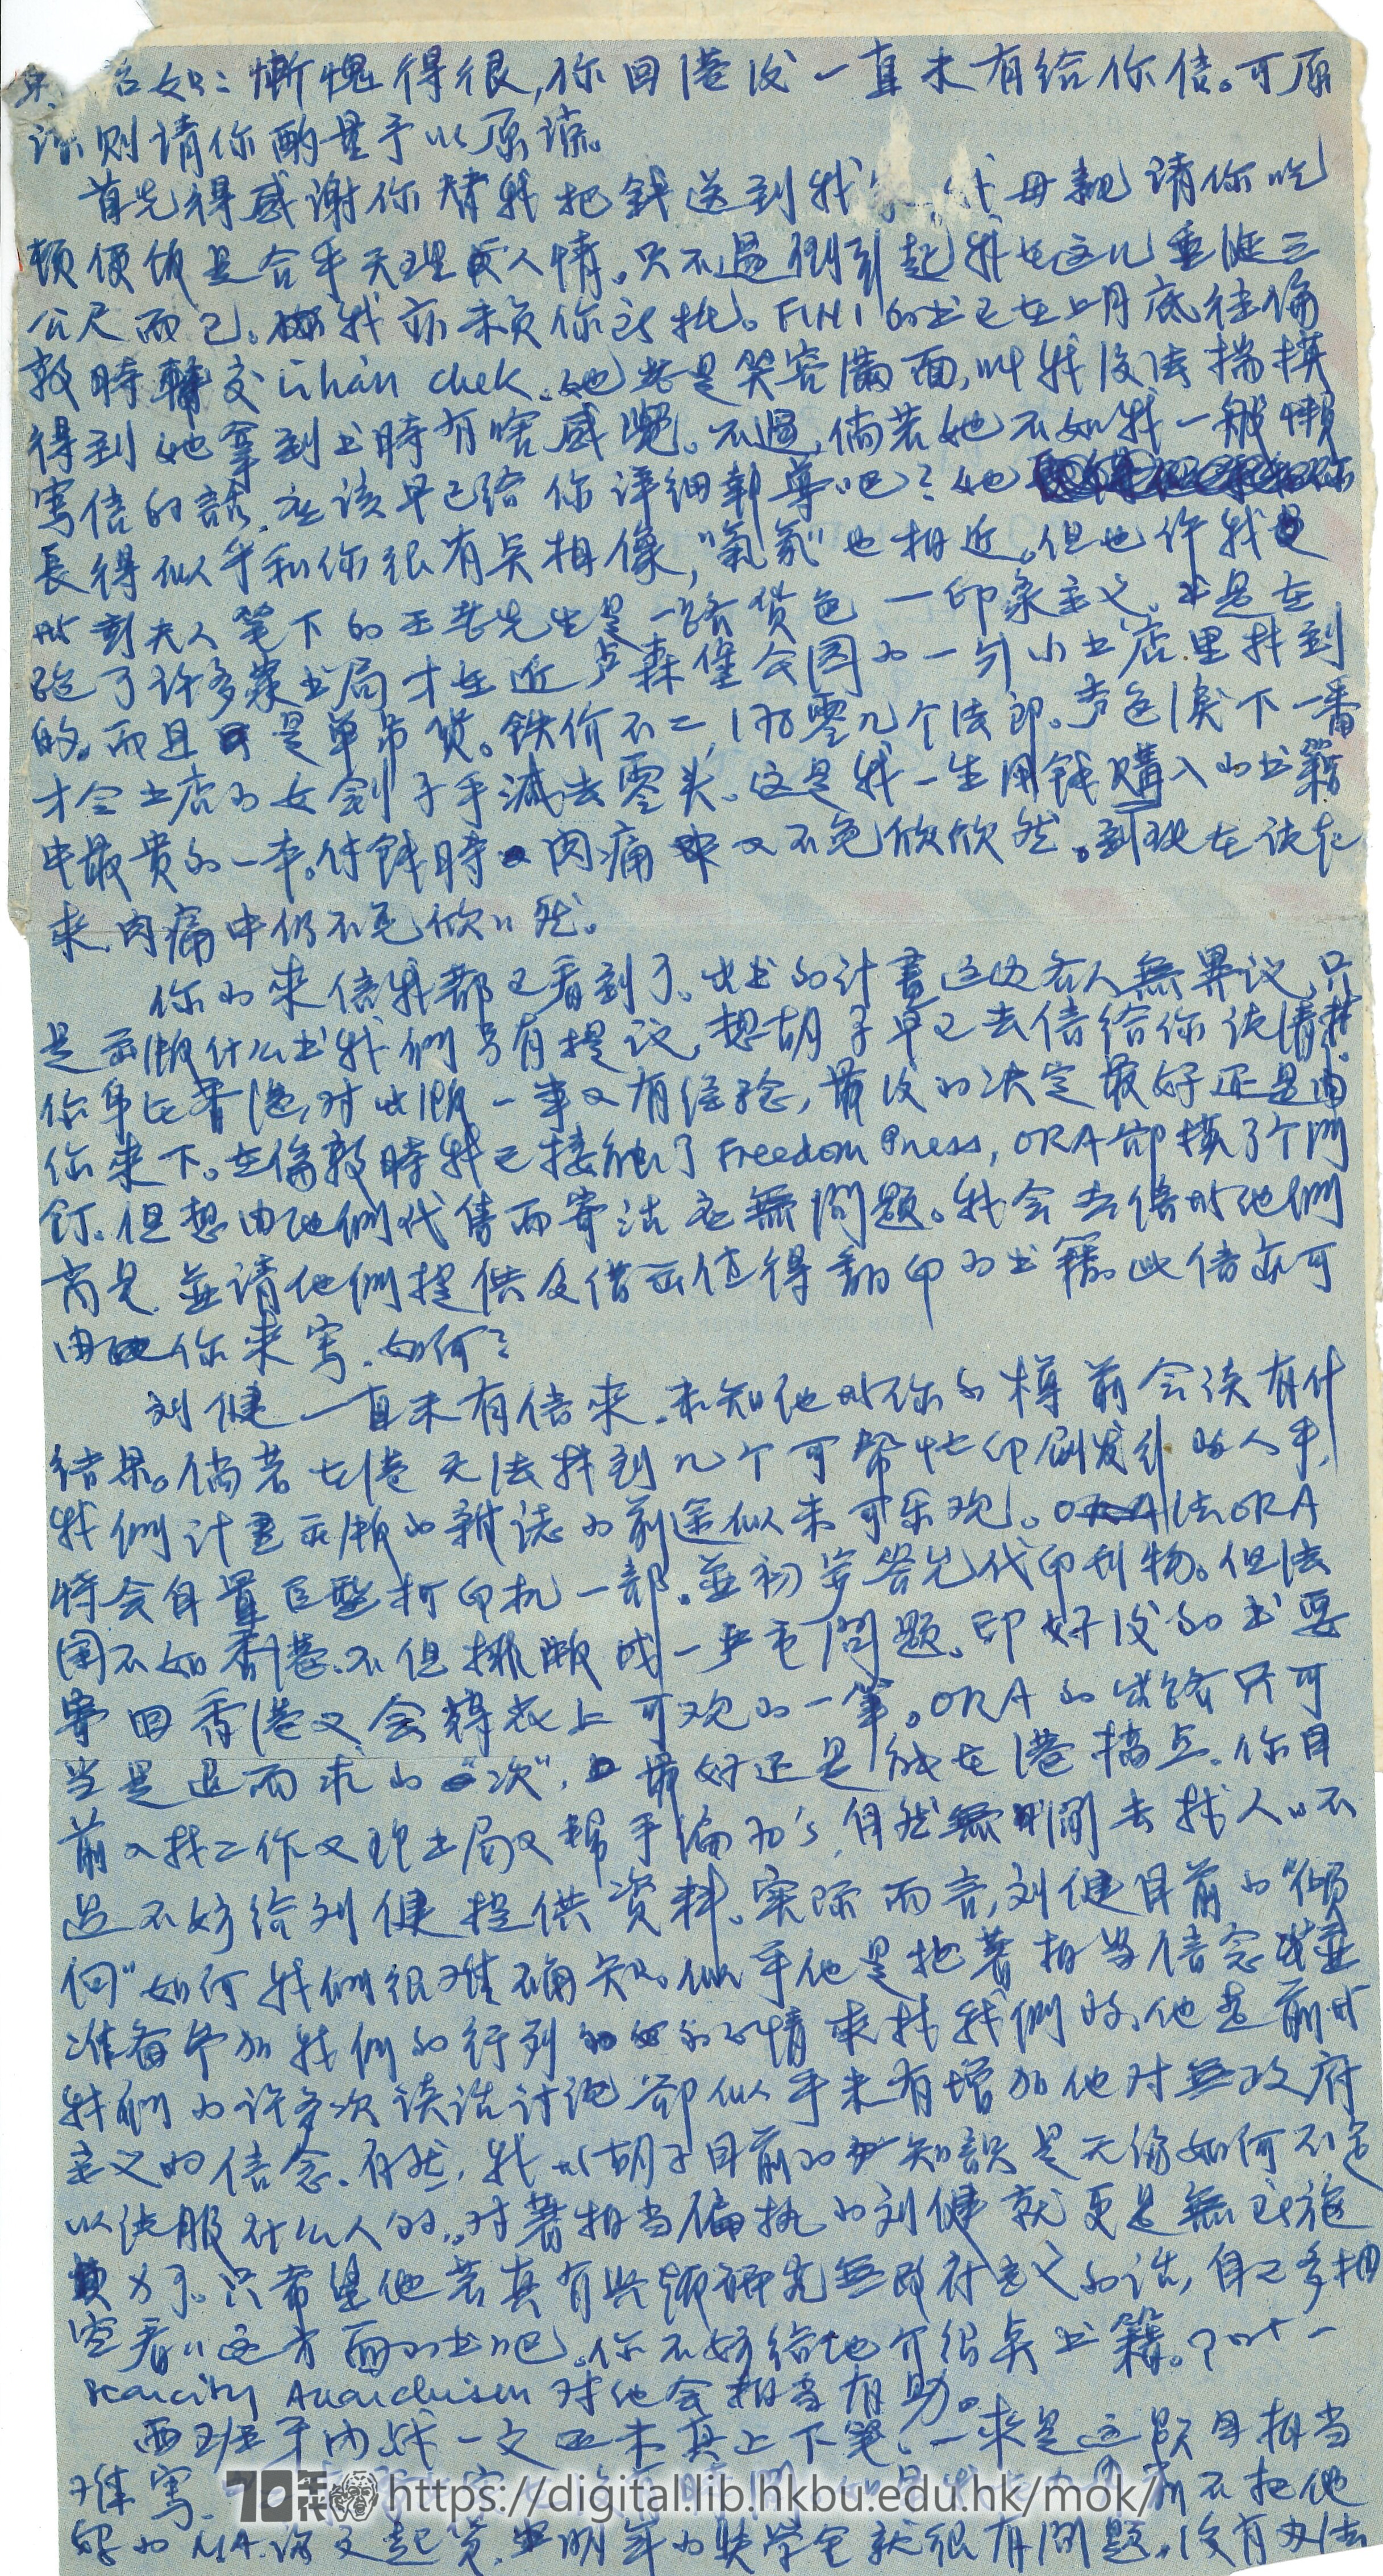   Letter from Choi Hak Kin to Mok Chiu Yu Choi 